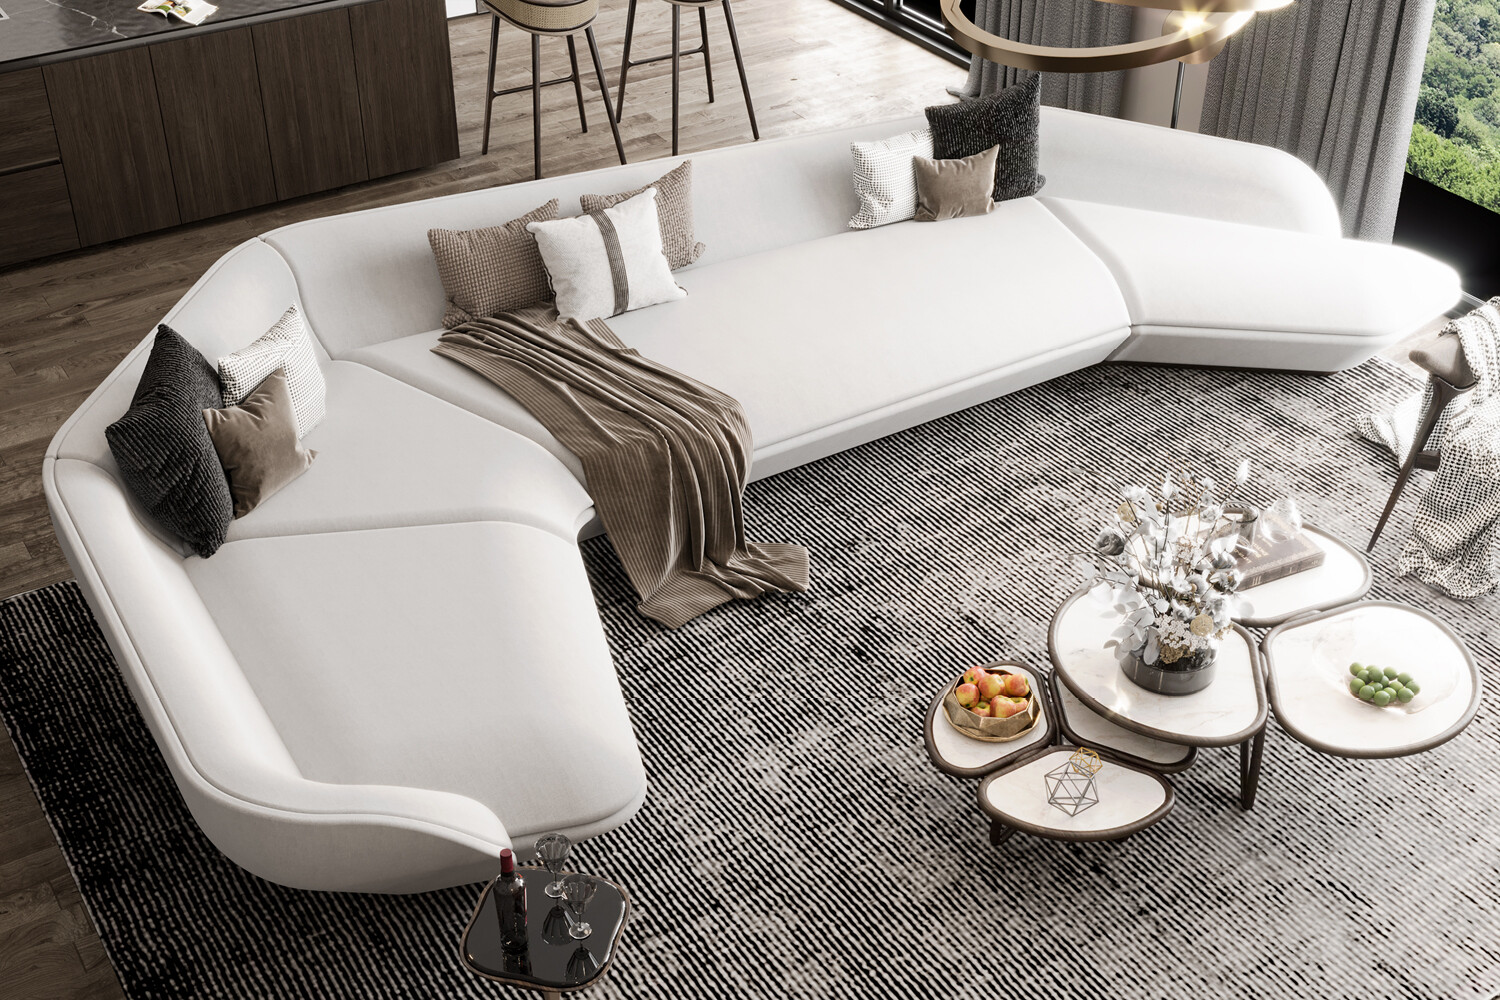 Sofa Set Design Trends Creating A